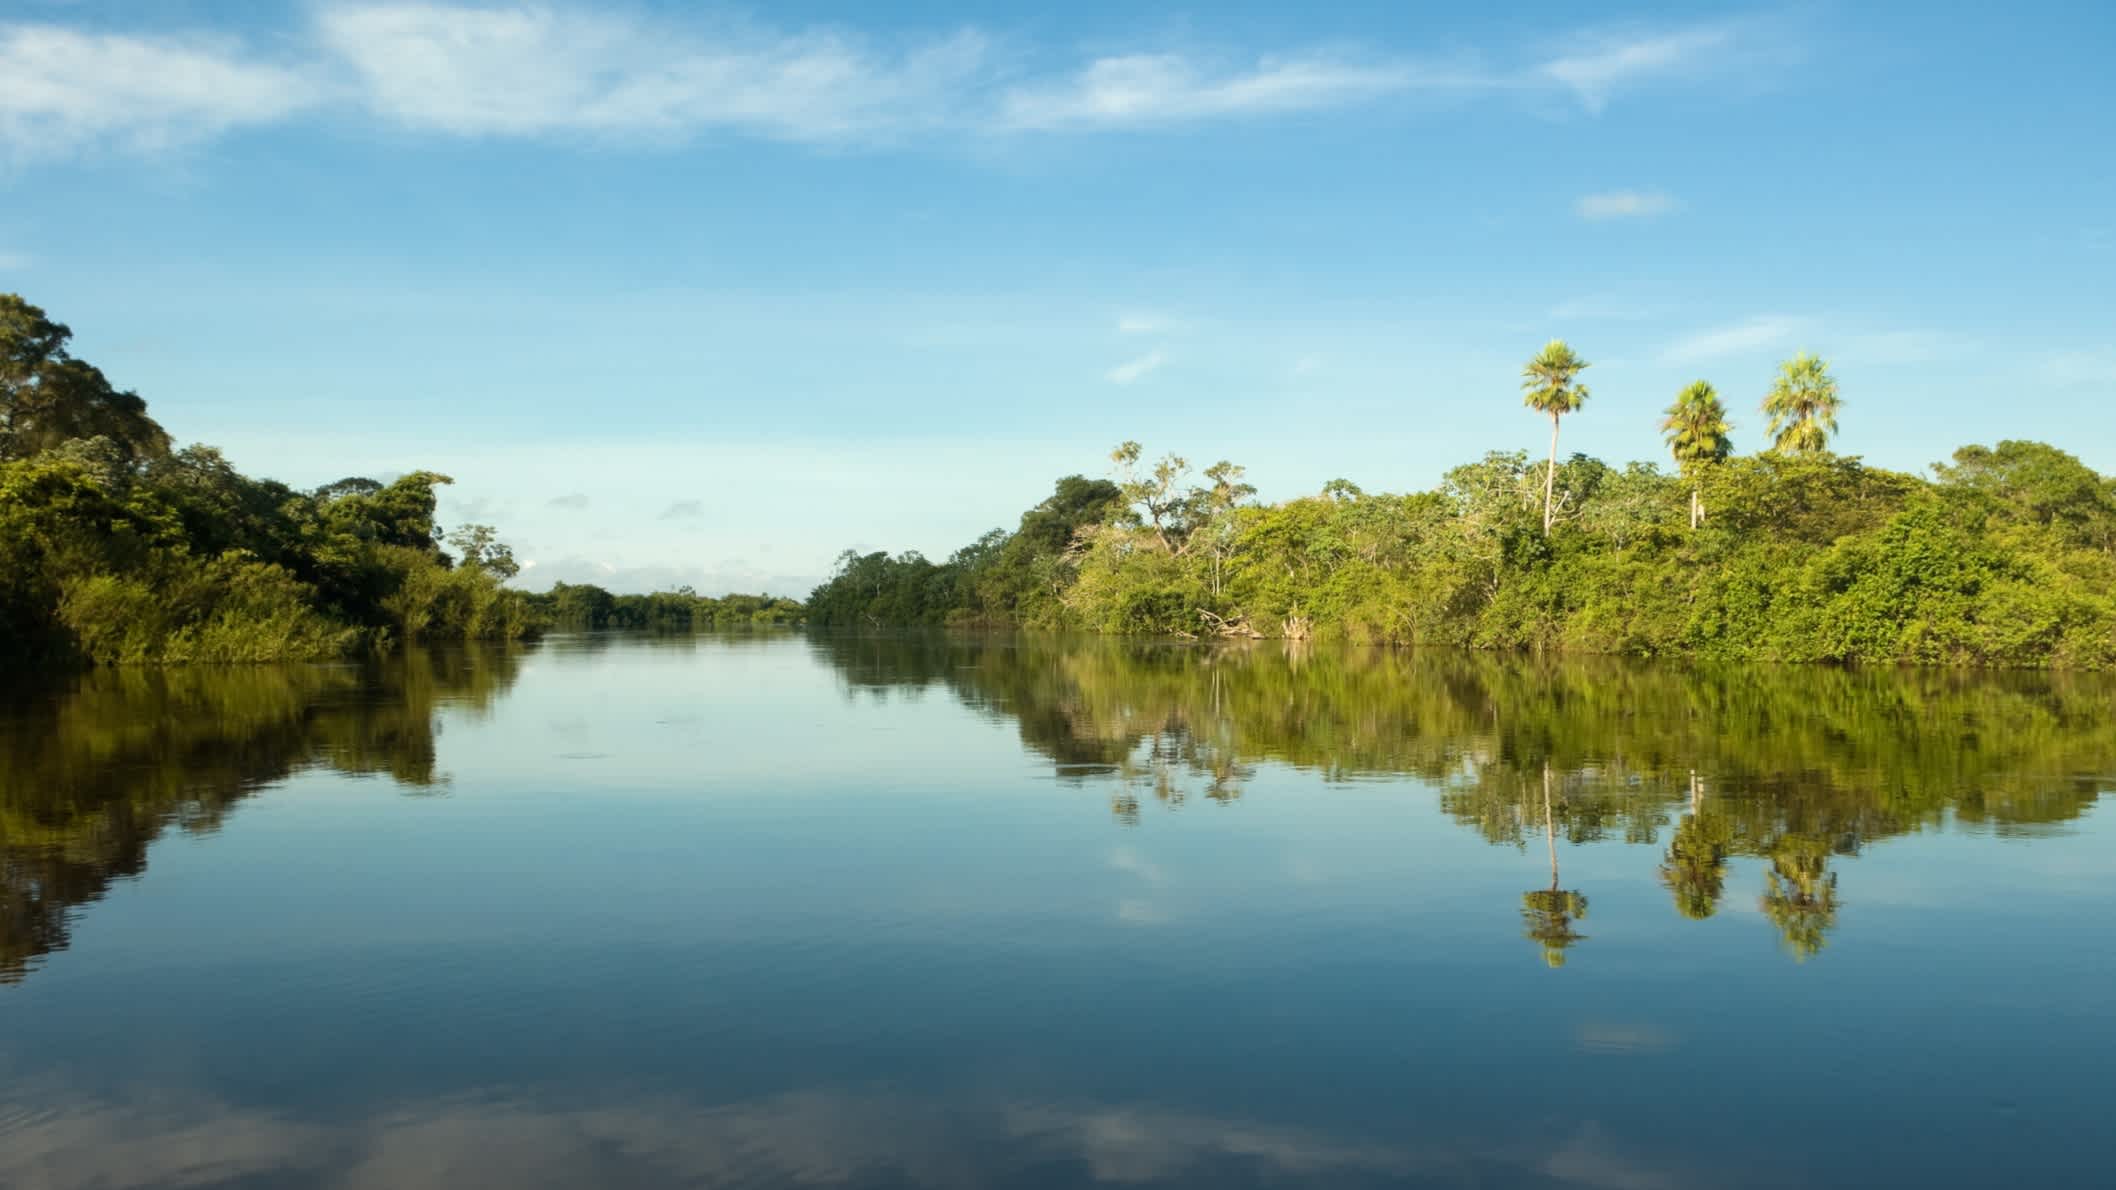 Pantanal-Feuchtgebiete während der Hochwasserzeit. Blick auf den Abobral-Fluss, Mato Grosso do Sul, Brasilien, UNESCO-Weltnaturerbe und Biosphärenreservat